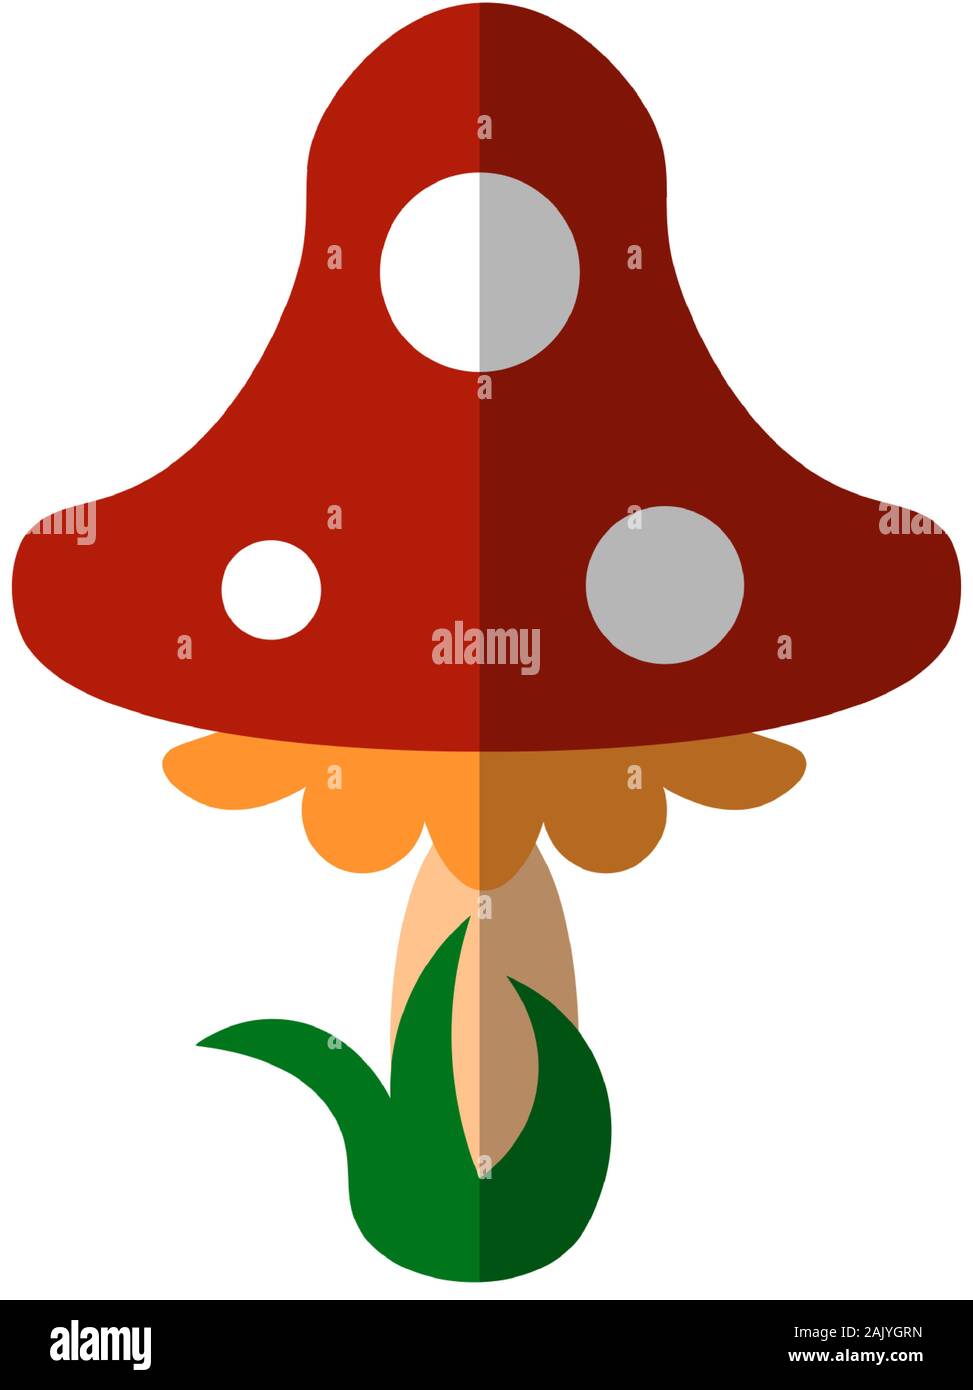 Vektor flachbild Abbildung: fly Agaric im Comic-stil für Bücher der Kinder und Parteien gezeichnet. Pilz mit Red Hat und weissen Punkten, fly Agaric oder Stock Vektor